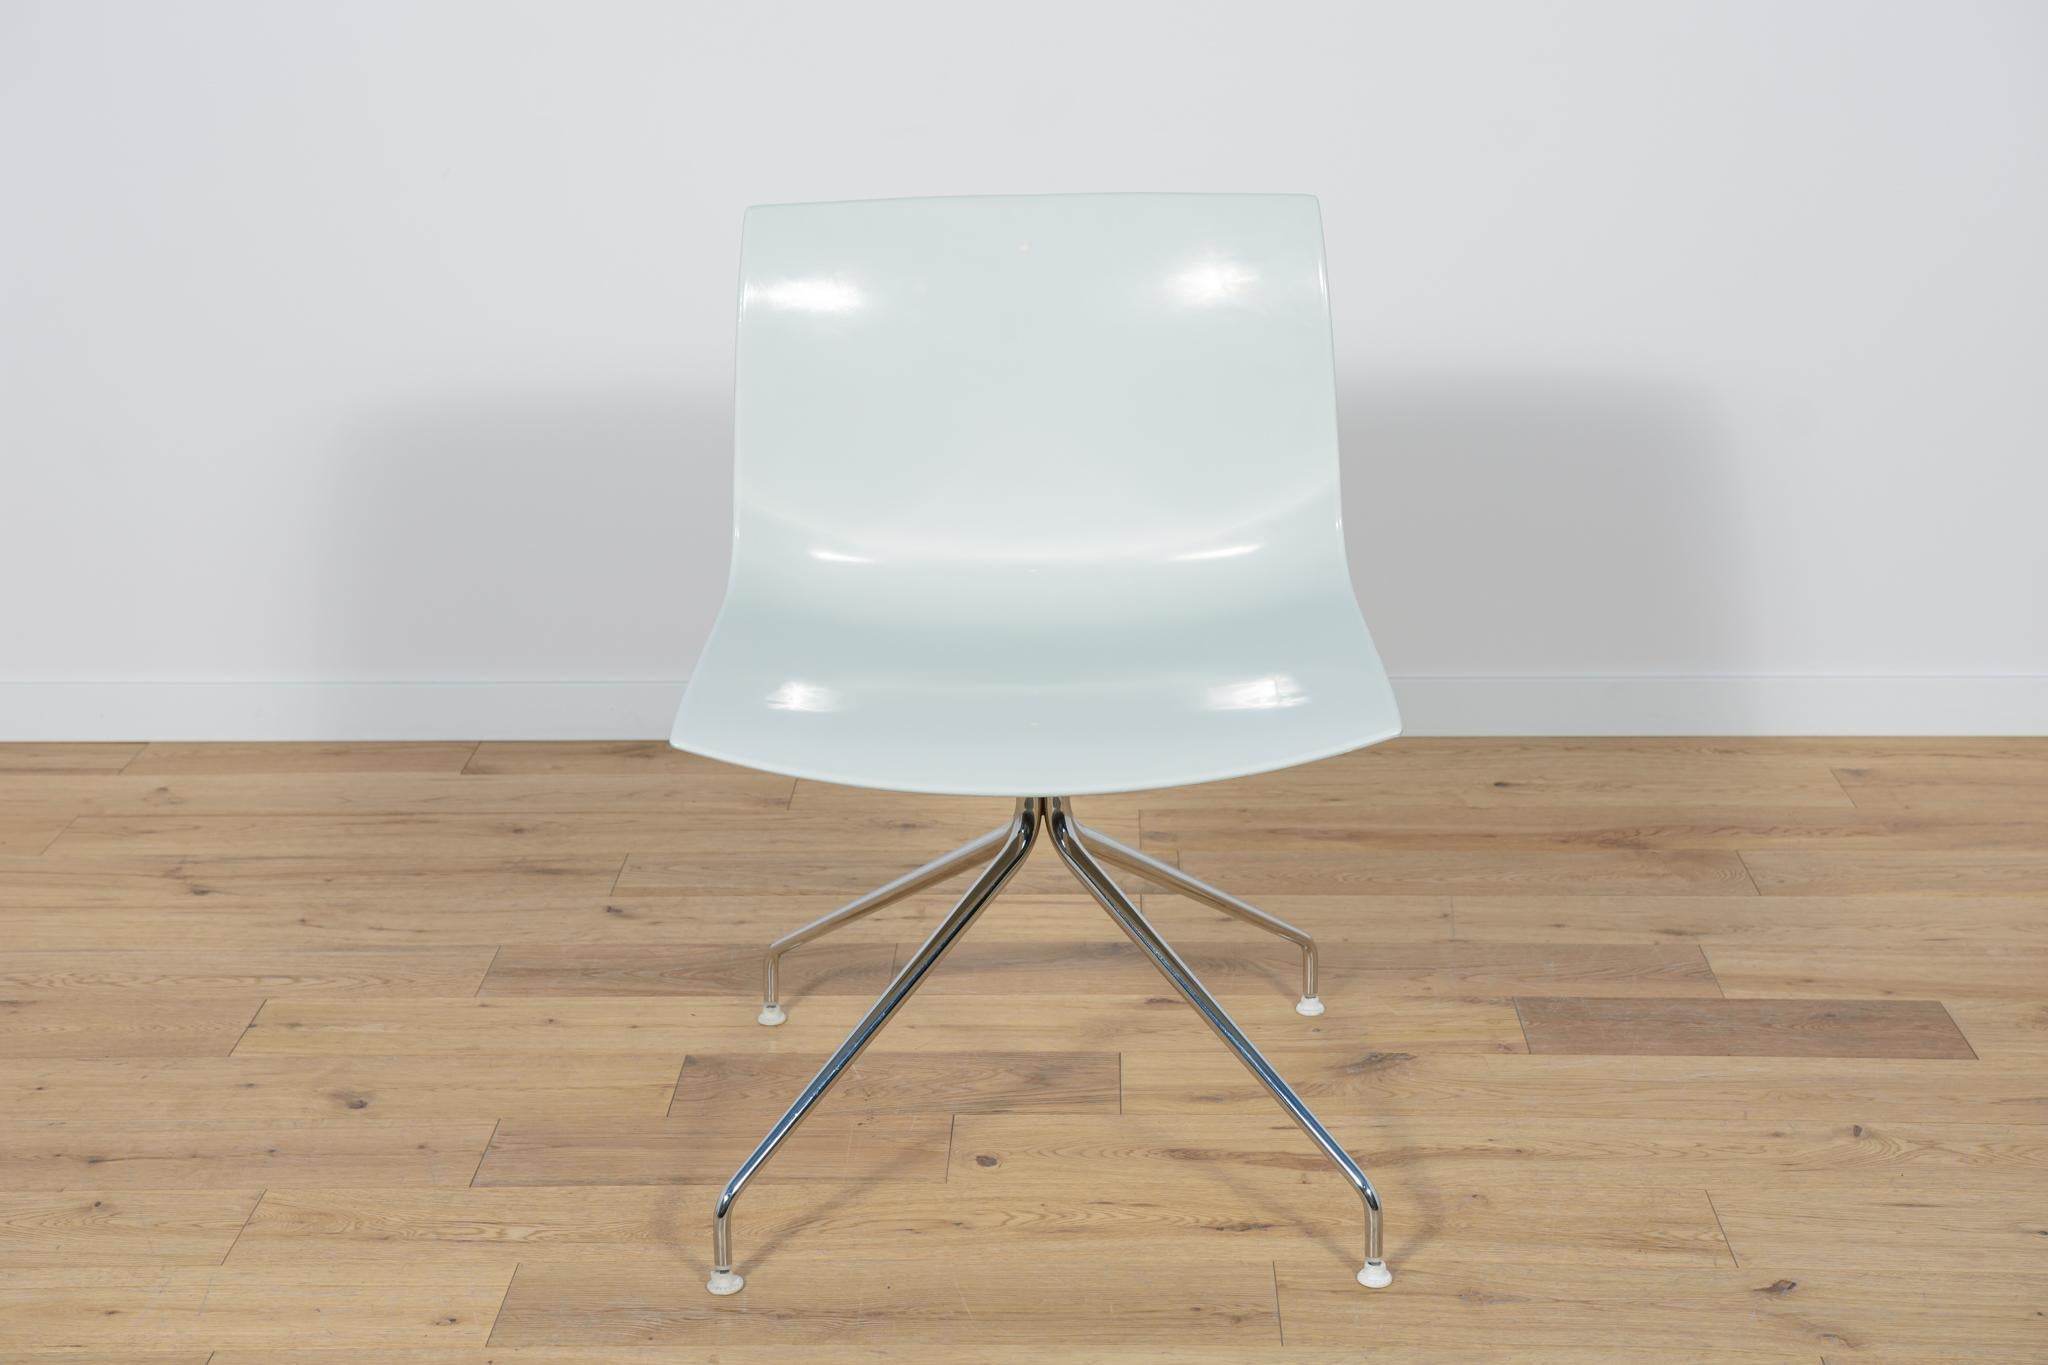 Der Stuhl wurde von Lievore Altherr Molina entworfen und von Arper zu Beginn des 21. Jahrhunderts in Italien hergestellt. Der Stuhl hat verchromte, drehbare Beine. Die Chromelemente wurden poliert. Ergonomische Sitze aus stabilem Kunststoff. Die